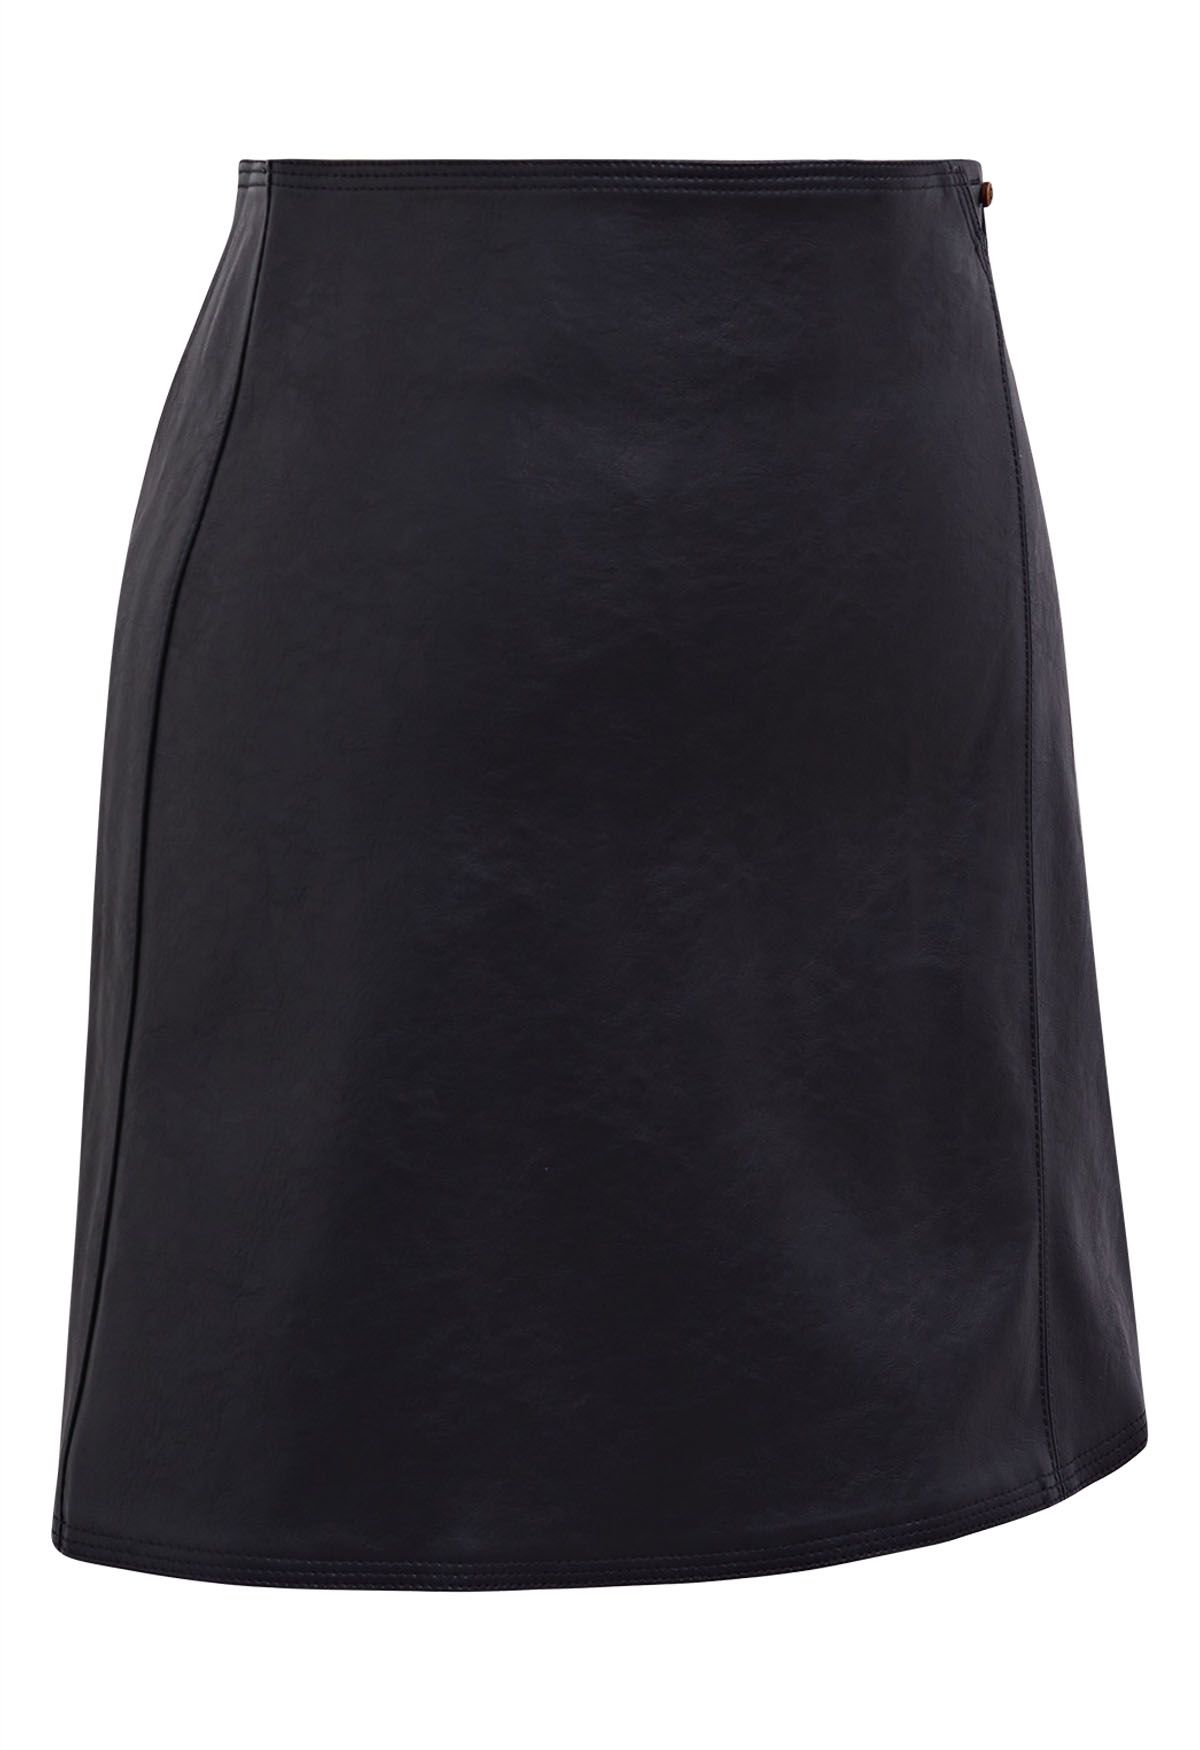 Minifalda de piel sintética con botones en negro